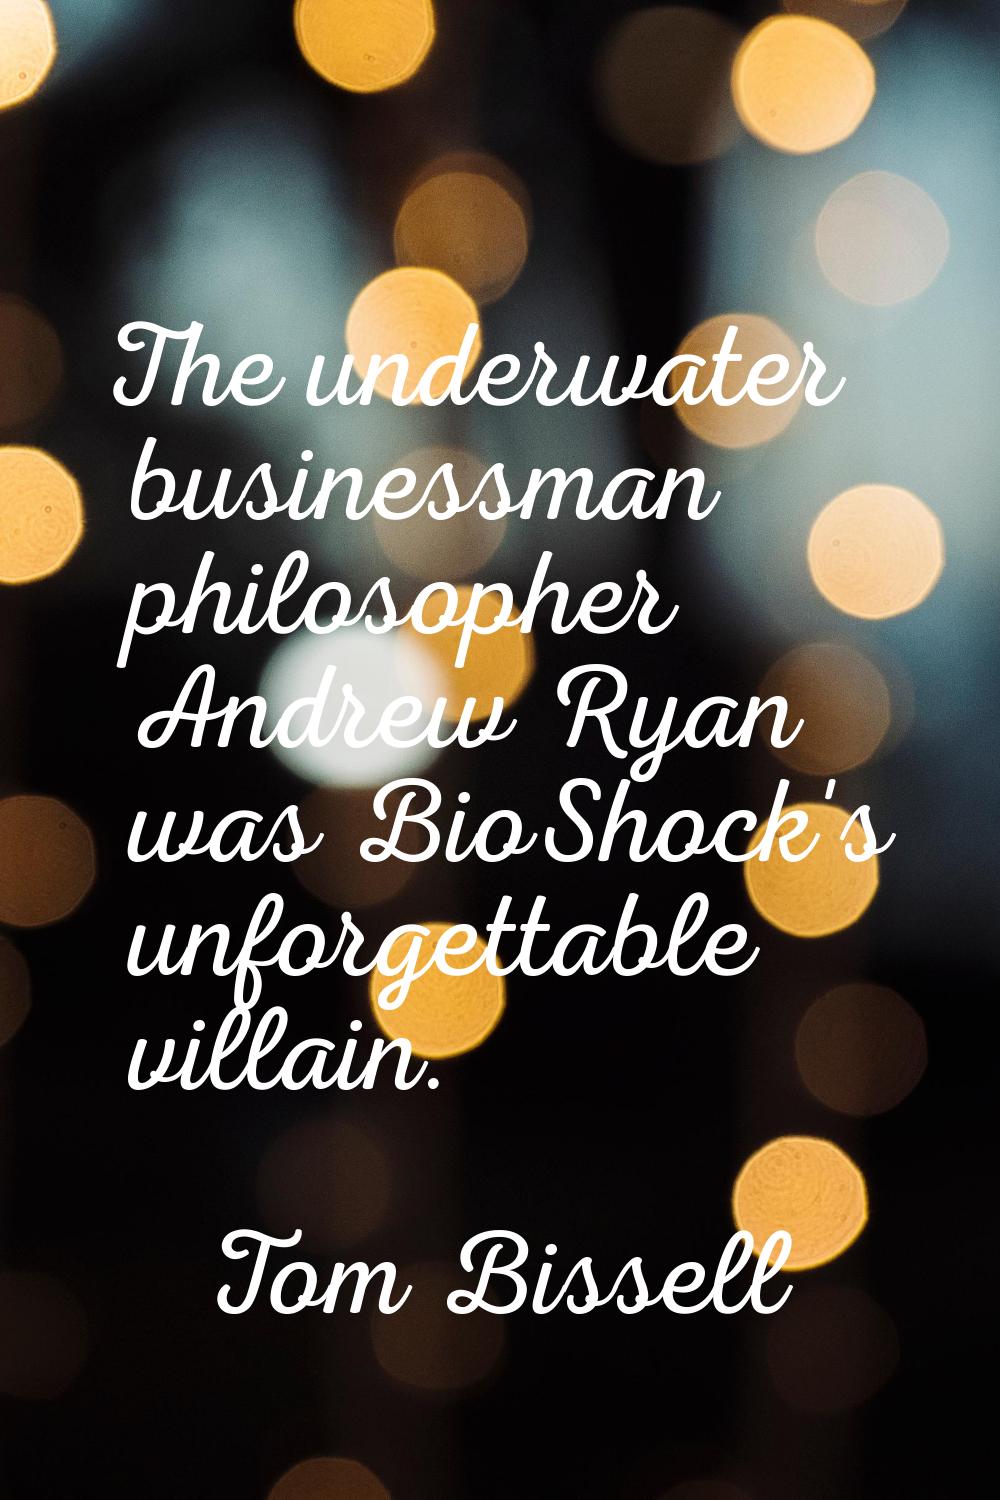 The underwater businessman philosopher Andrew Ryan was BioShock's unforgettable villain.